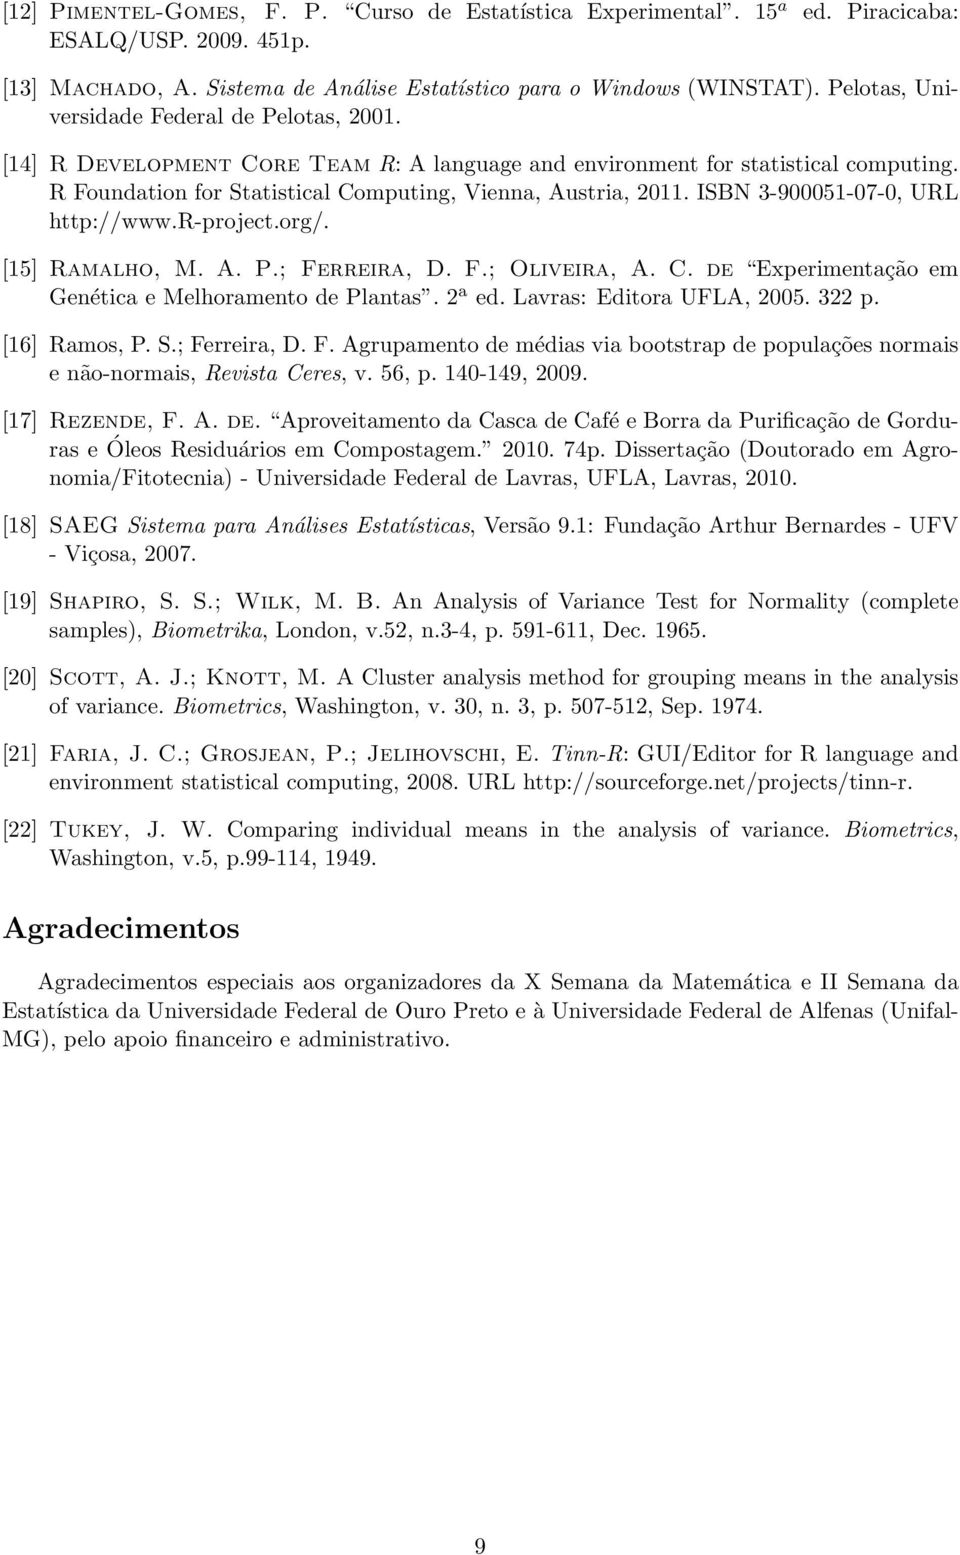 ISBN 3-900051-07-0, URL http://www.r-project.org/. [15] Ramalho, M. A. P.; Ferreira, D. F.; Oliveira, A. C. de Experimentação em Genética e Melhoramento de Plantas. 2 a ed. Lavras: Editora UFLA, 2005.